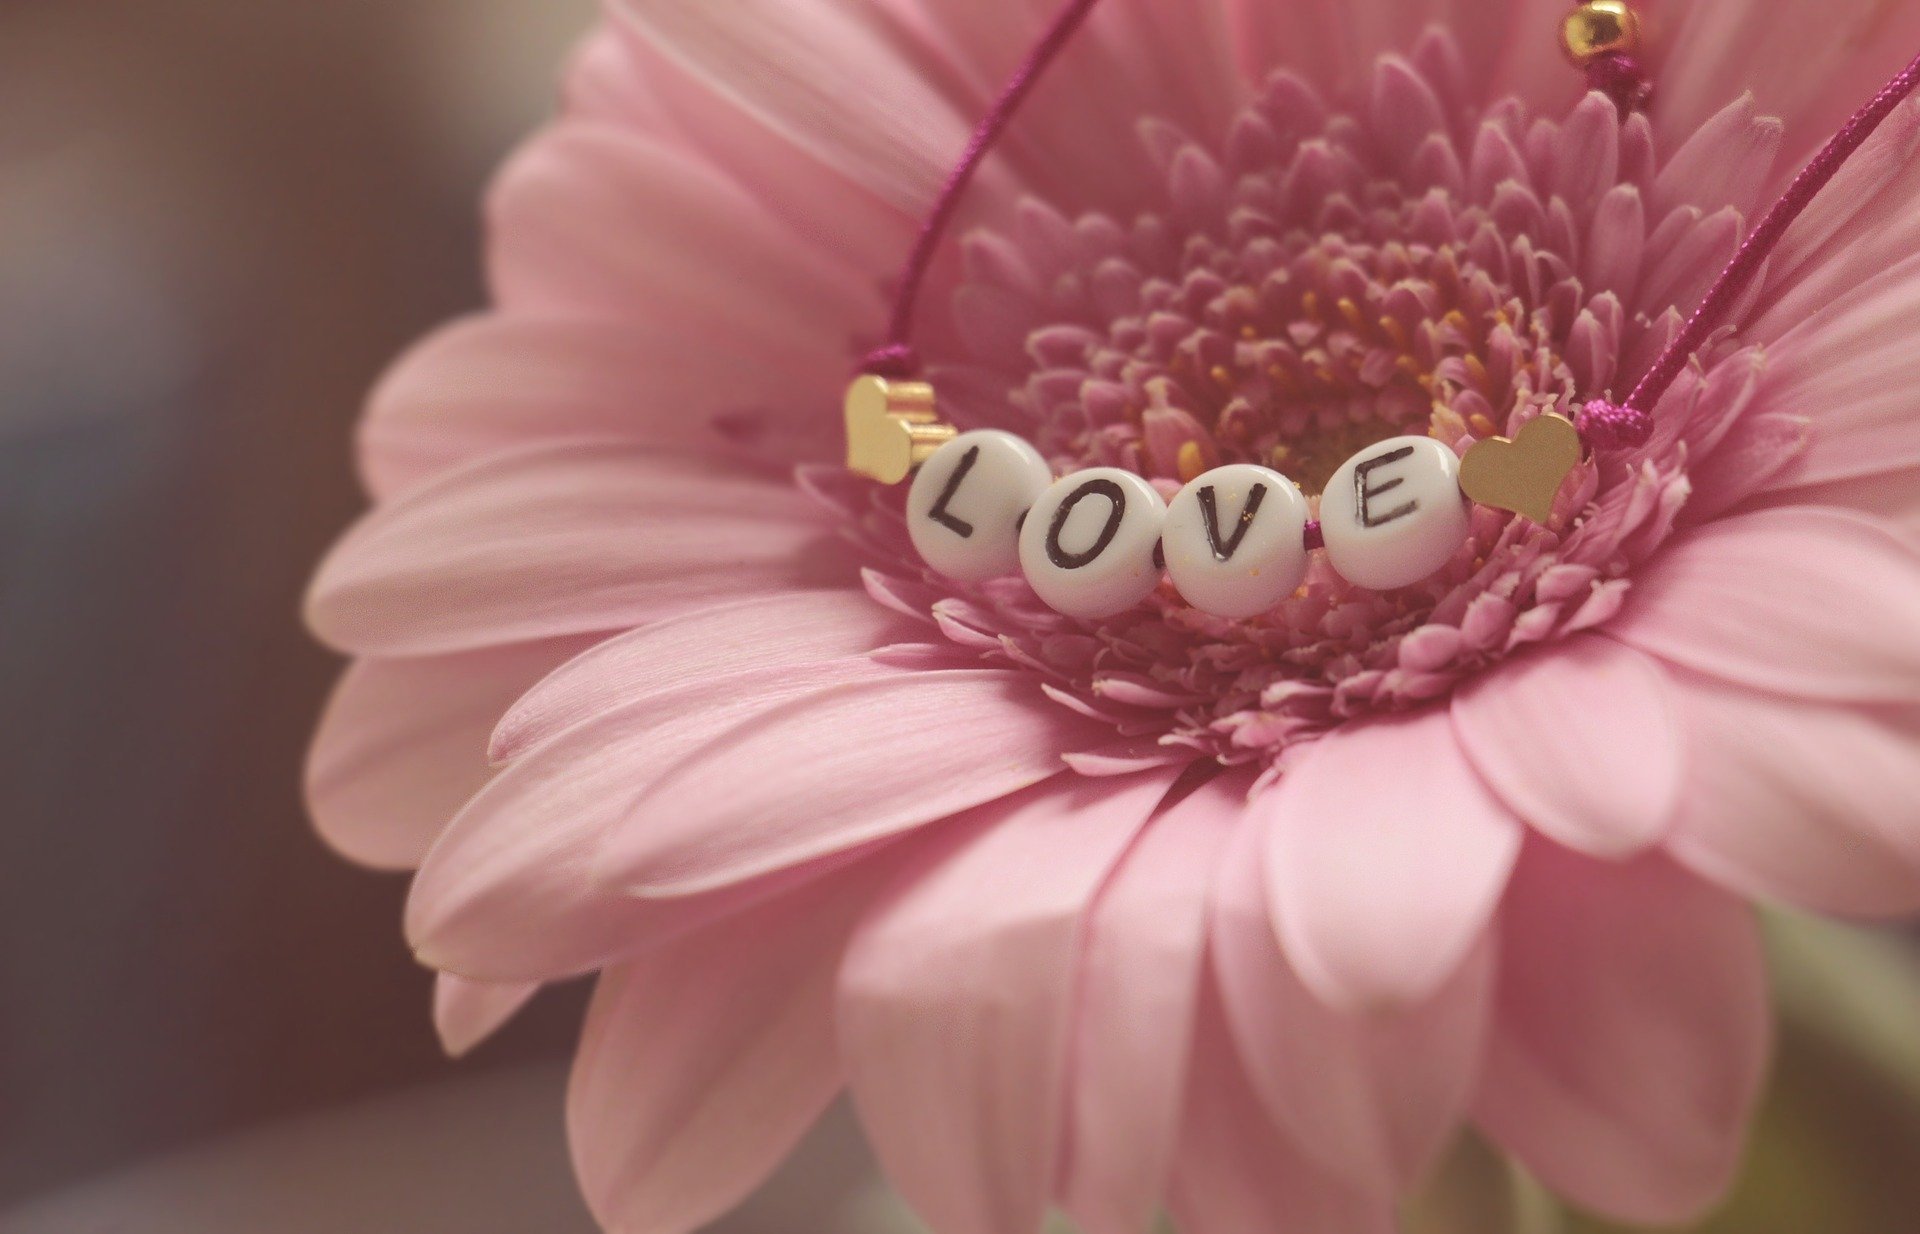 Flor com a palavra amor escrita em inglês